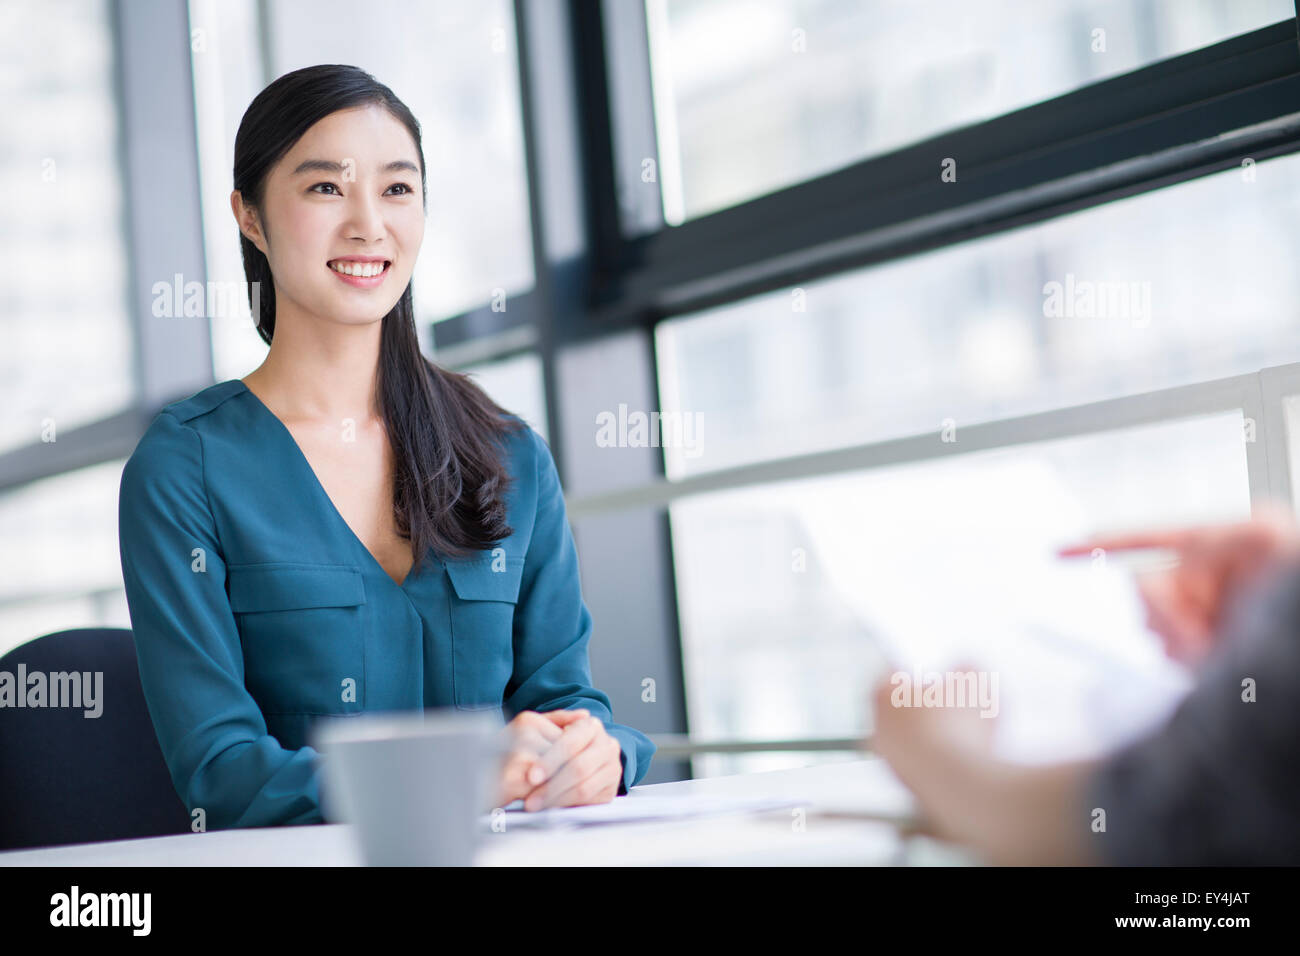 Junge Frau für ein Job Interview Stockfoto